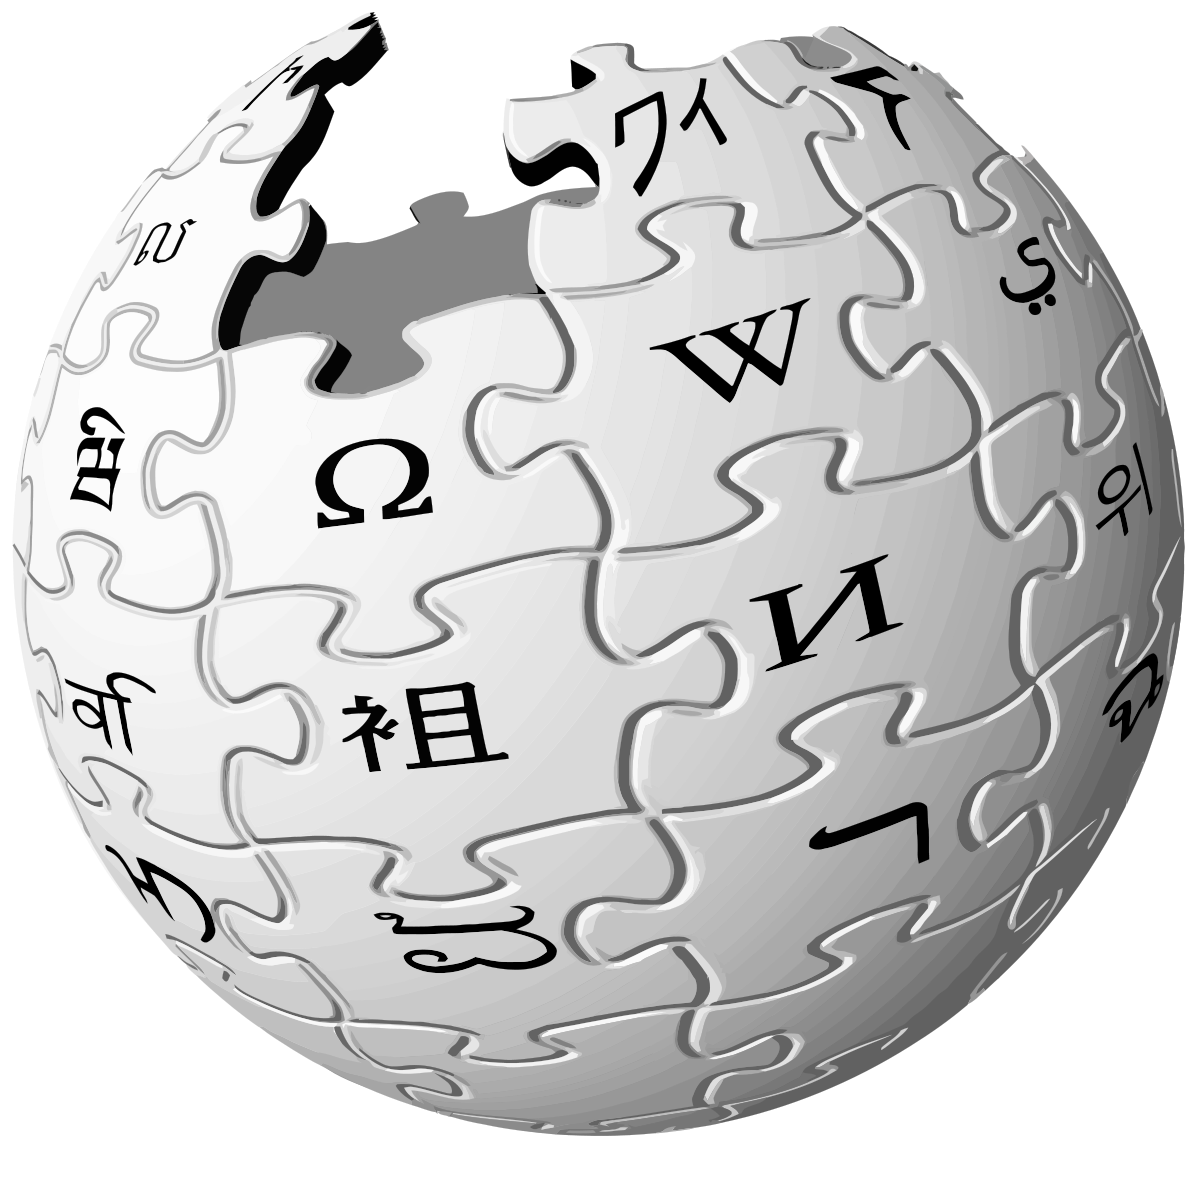 Википедия с открытым исходным кодом Wikiless